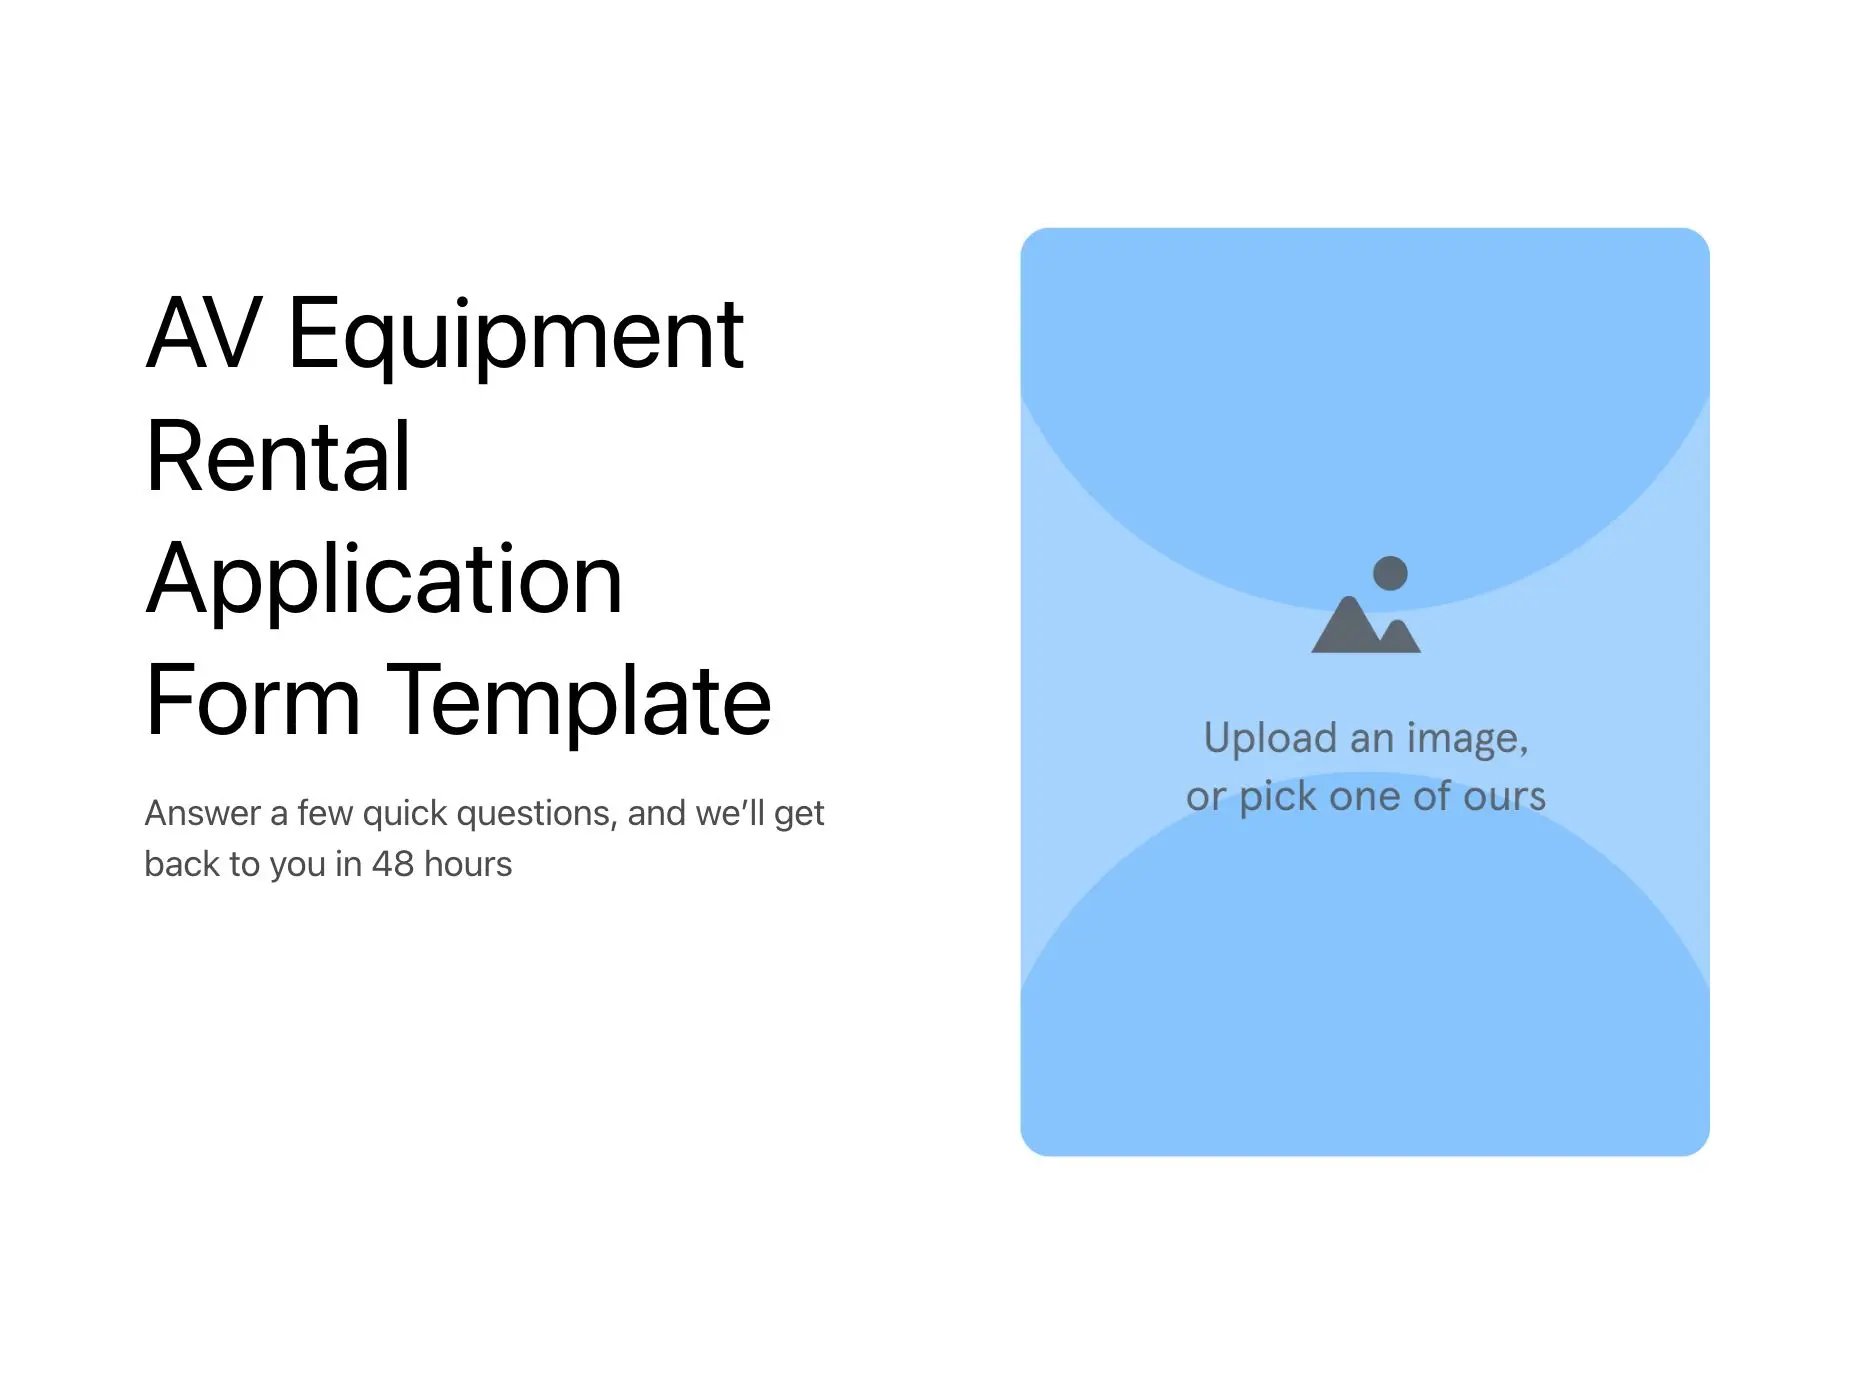 AV Equipment Rental Application Form Template Hero